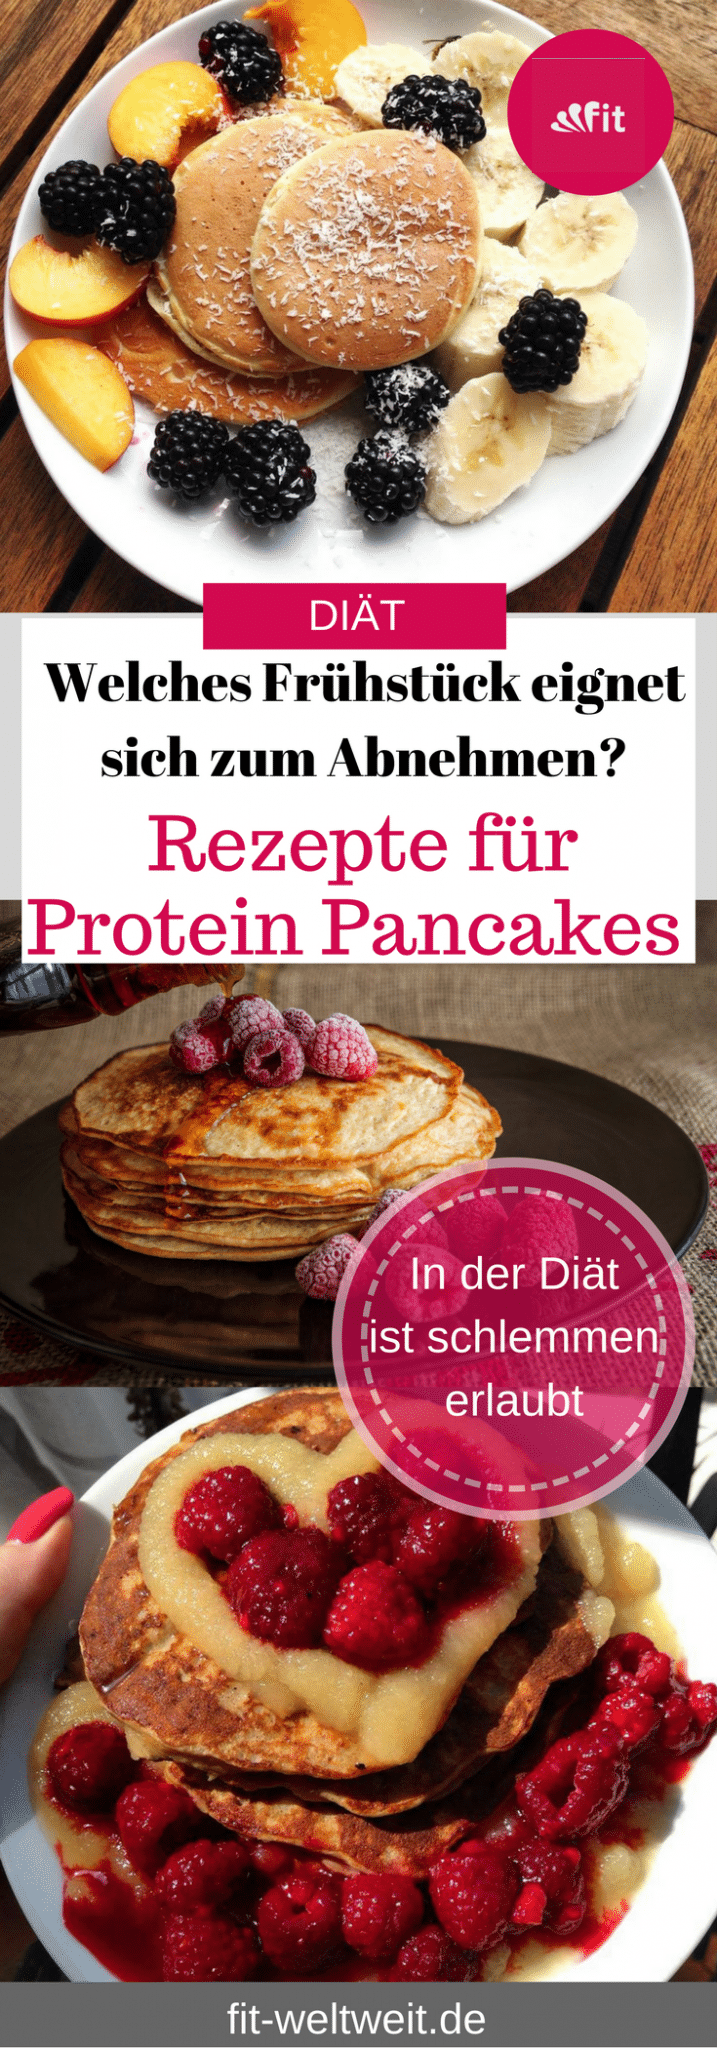 Rezepte für HCG Protein Pancakes: Rezepte für HCG Protein #Pancakes (#Stoffwechselkur geeignet) gebe ich dir hier. Ich bin sowieso ein Pancakes Fan und habe dir unten noch weitere leckere Pancakes verlinkt, die auch während deiner Diät, beim #Abnehmen oder #Ernährungsumstellung geeignet sind.Rezepte für HCG Protein Pancakes: Rezepte für HCG Protein Pancakes (Stoffwechselkur geeignet) gebe ich dir hier. Ich bin sowieso ein Pancakes Fan und habe dir unten noch weitere leckere Pancakes verlinkt, die auch während deiner Diät oder Ernährungsumstellung geeignet sind.